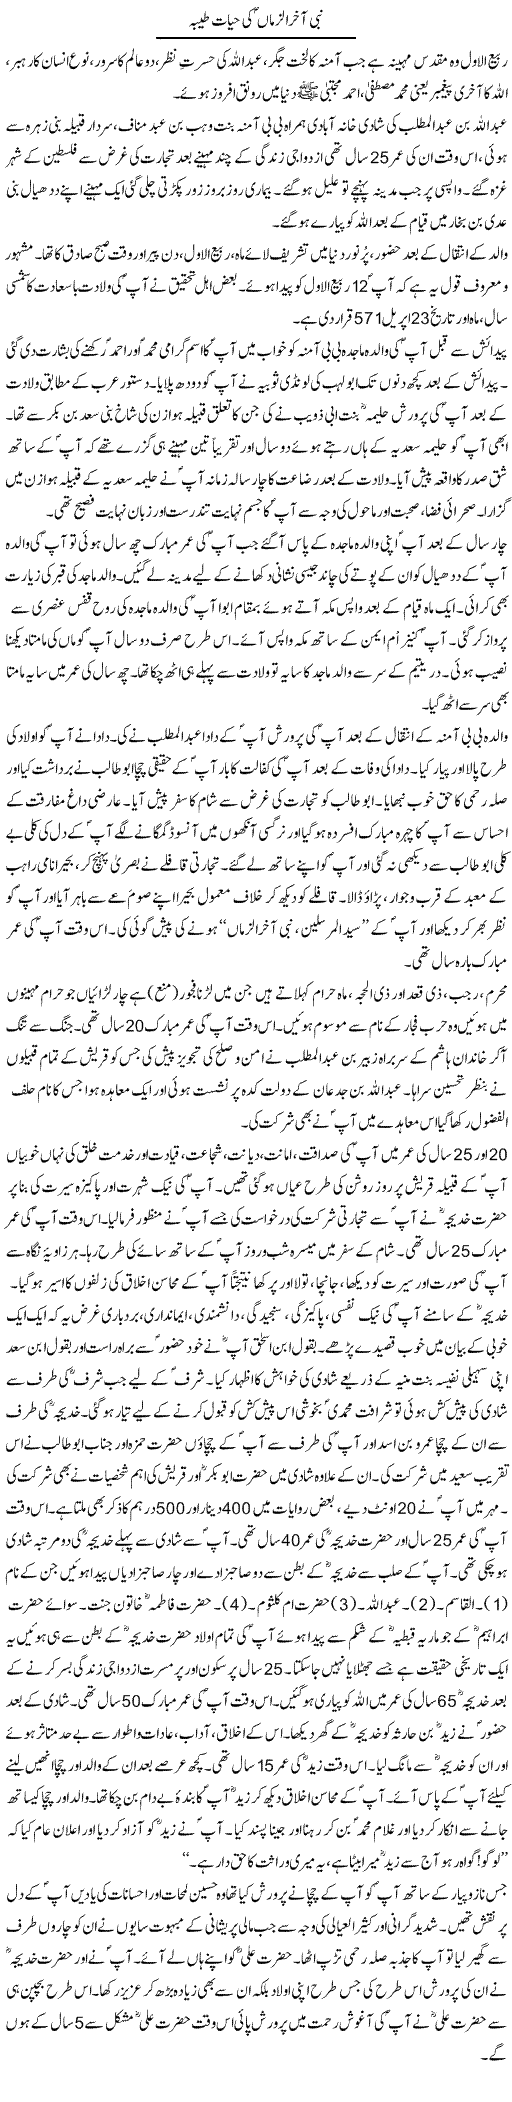 Nabi Aakhir Alzman Ki Hayat Tayyaba | Dr. Muhammad Tayyab Khan Singhanvi | Daily Urdu Columns